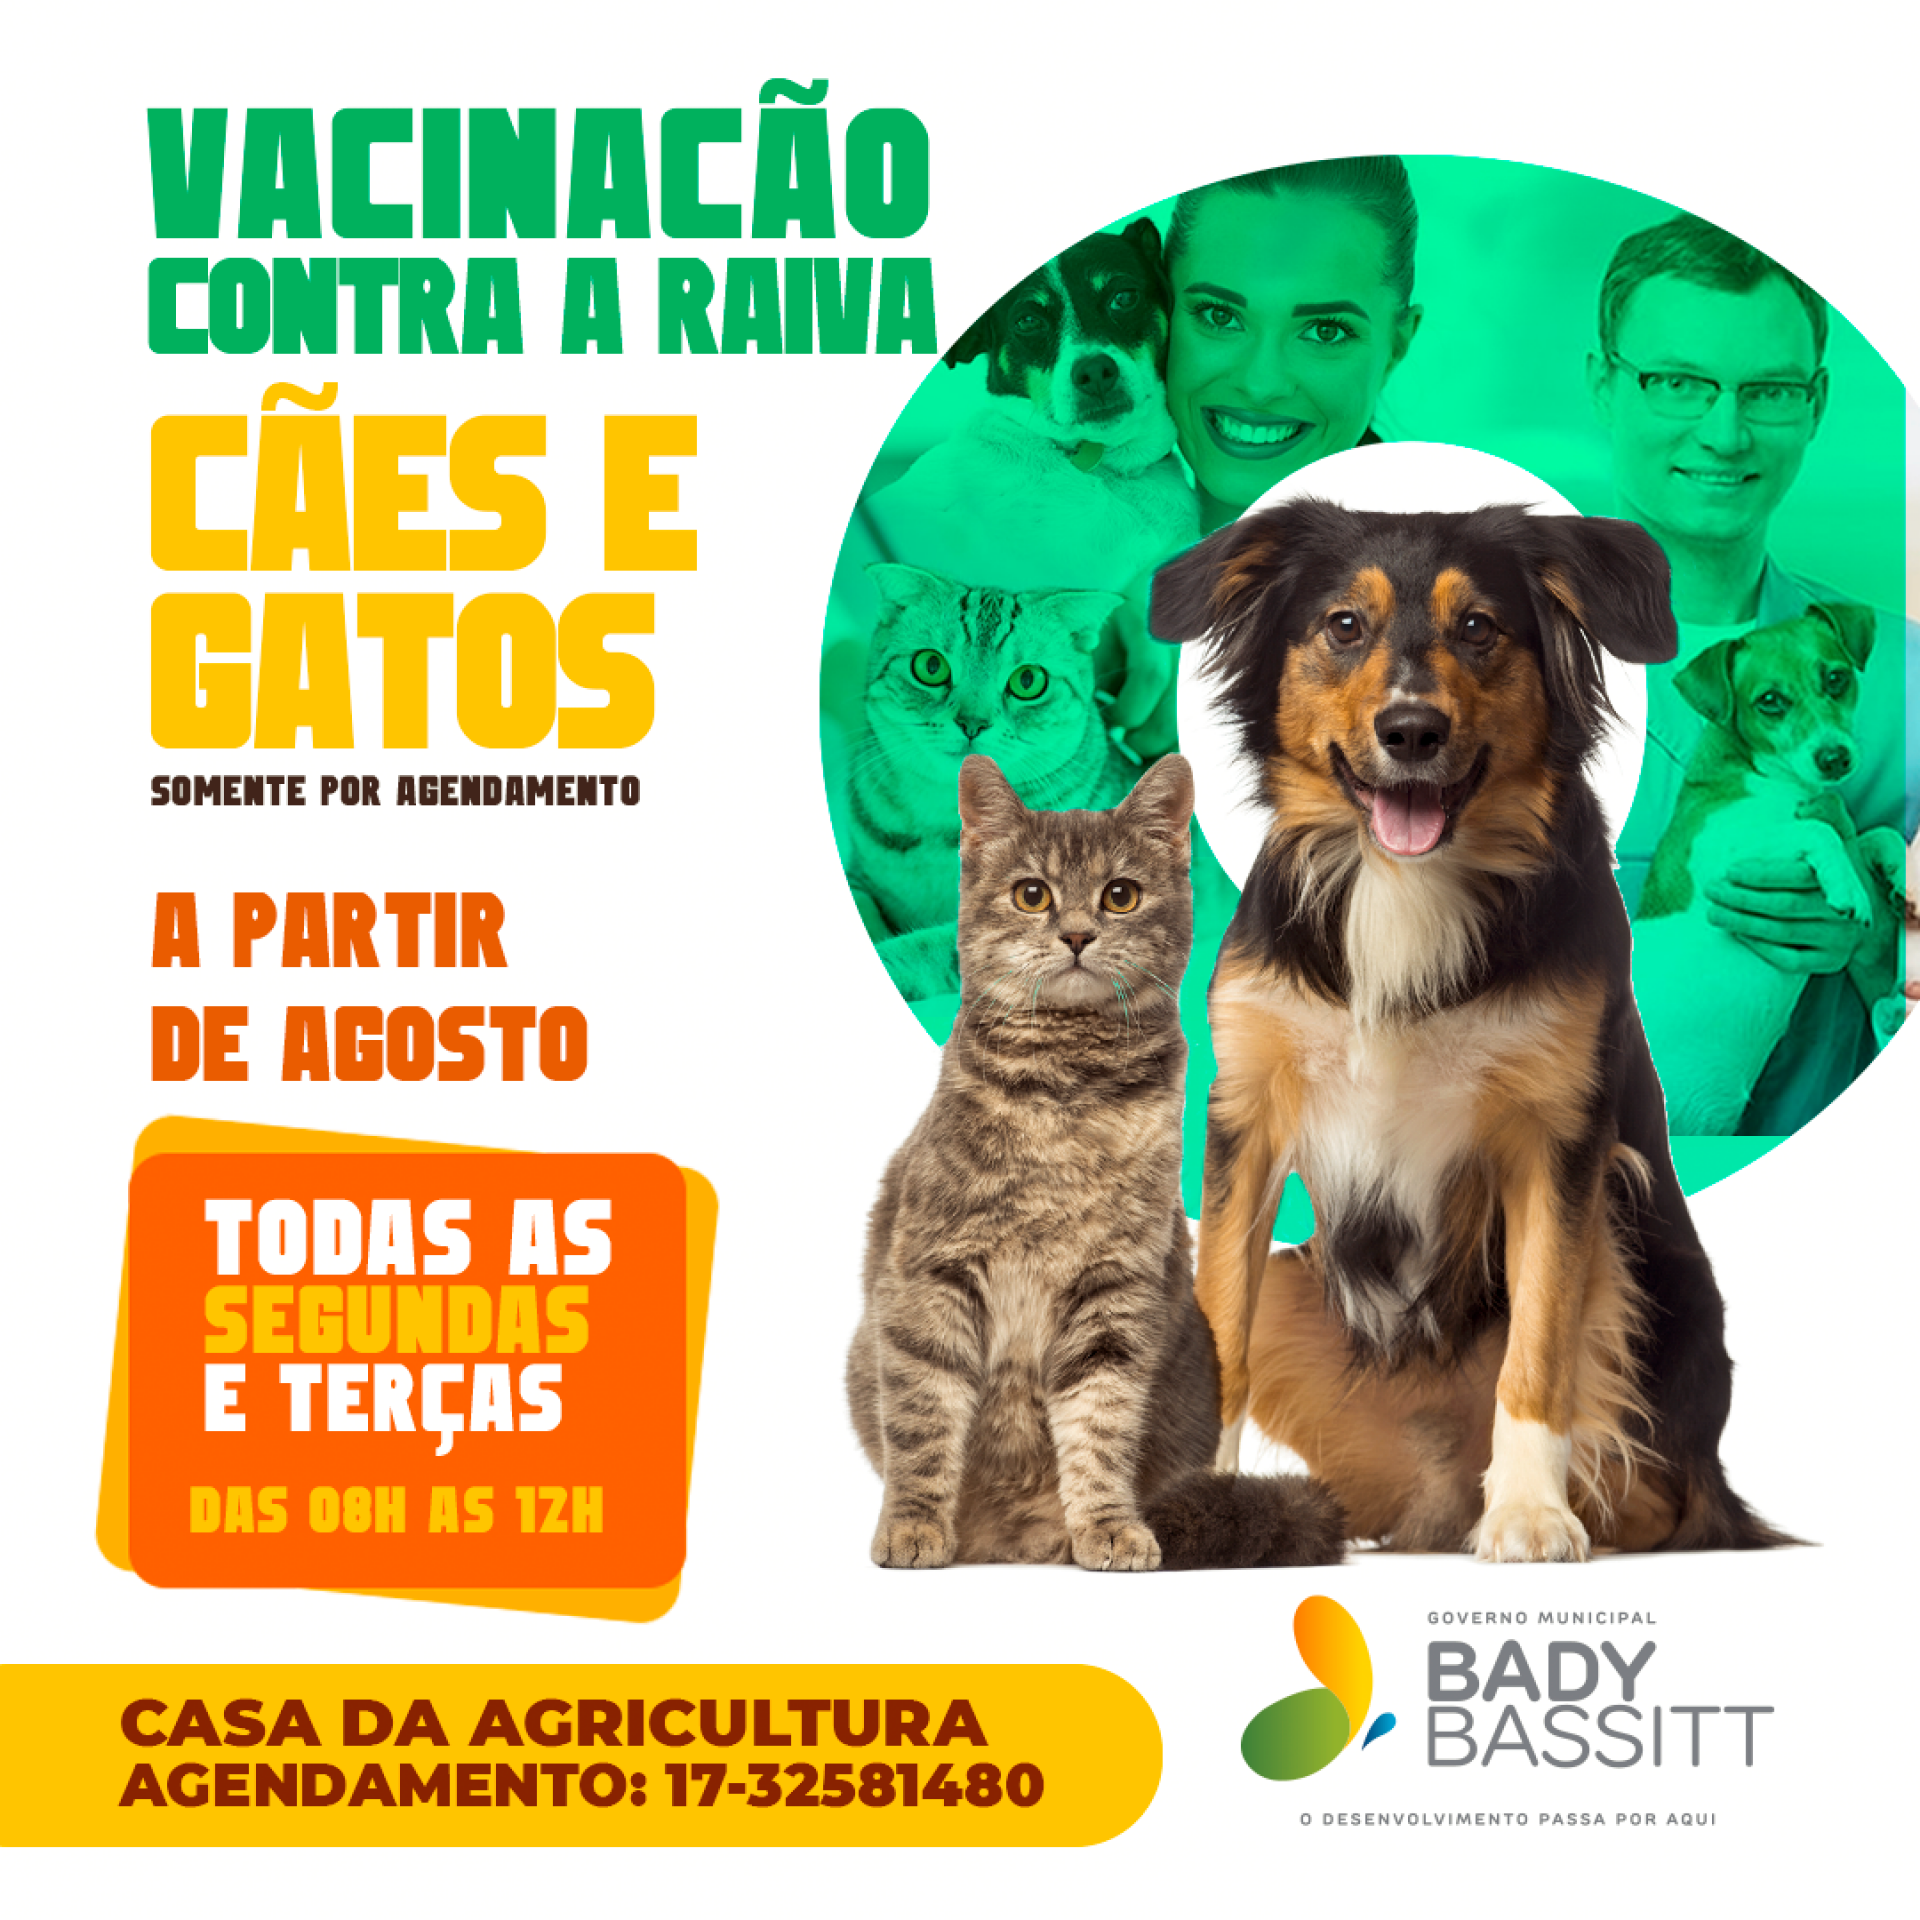 Bady terá vacinação contra raiva para cães e gatos a partir de agosto